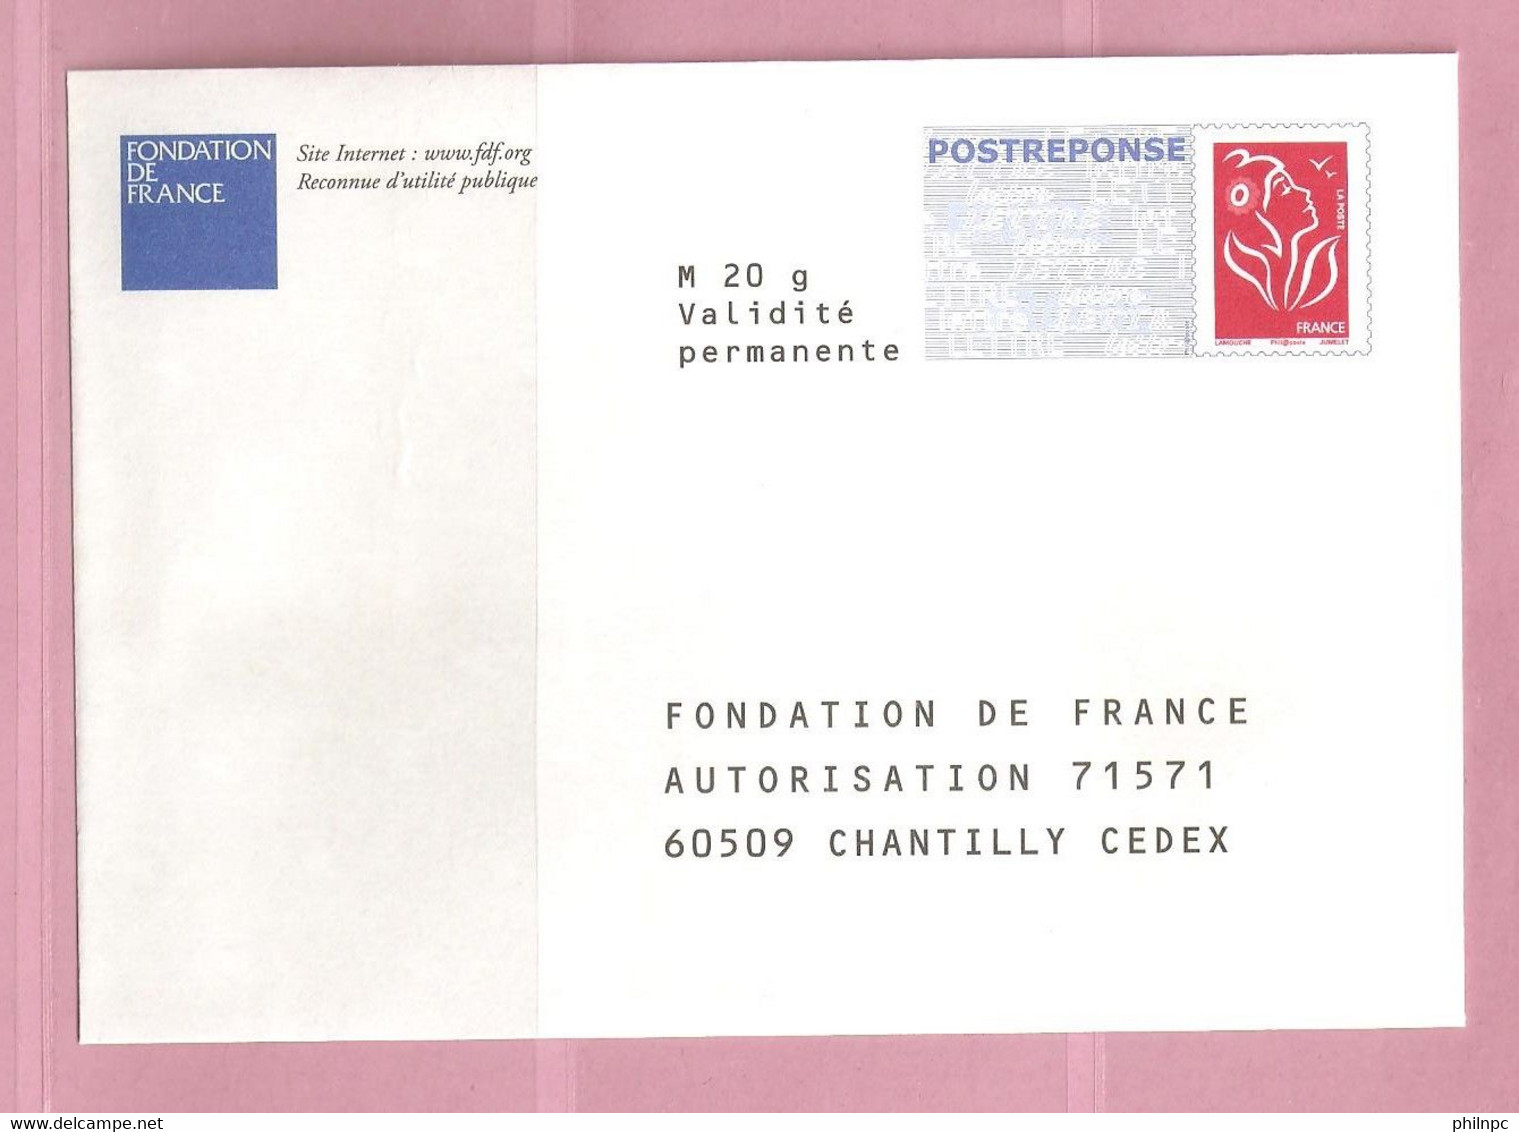 France, Prêt à Poster Réponse, 3734A, Postréponse, Fondation De France, Marianne De Lamouche - Prêts-à-poster:Answer/Lamouche